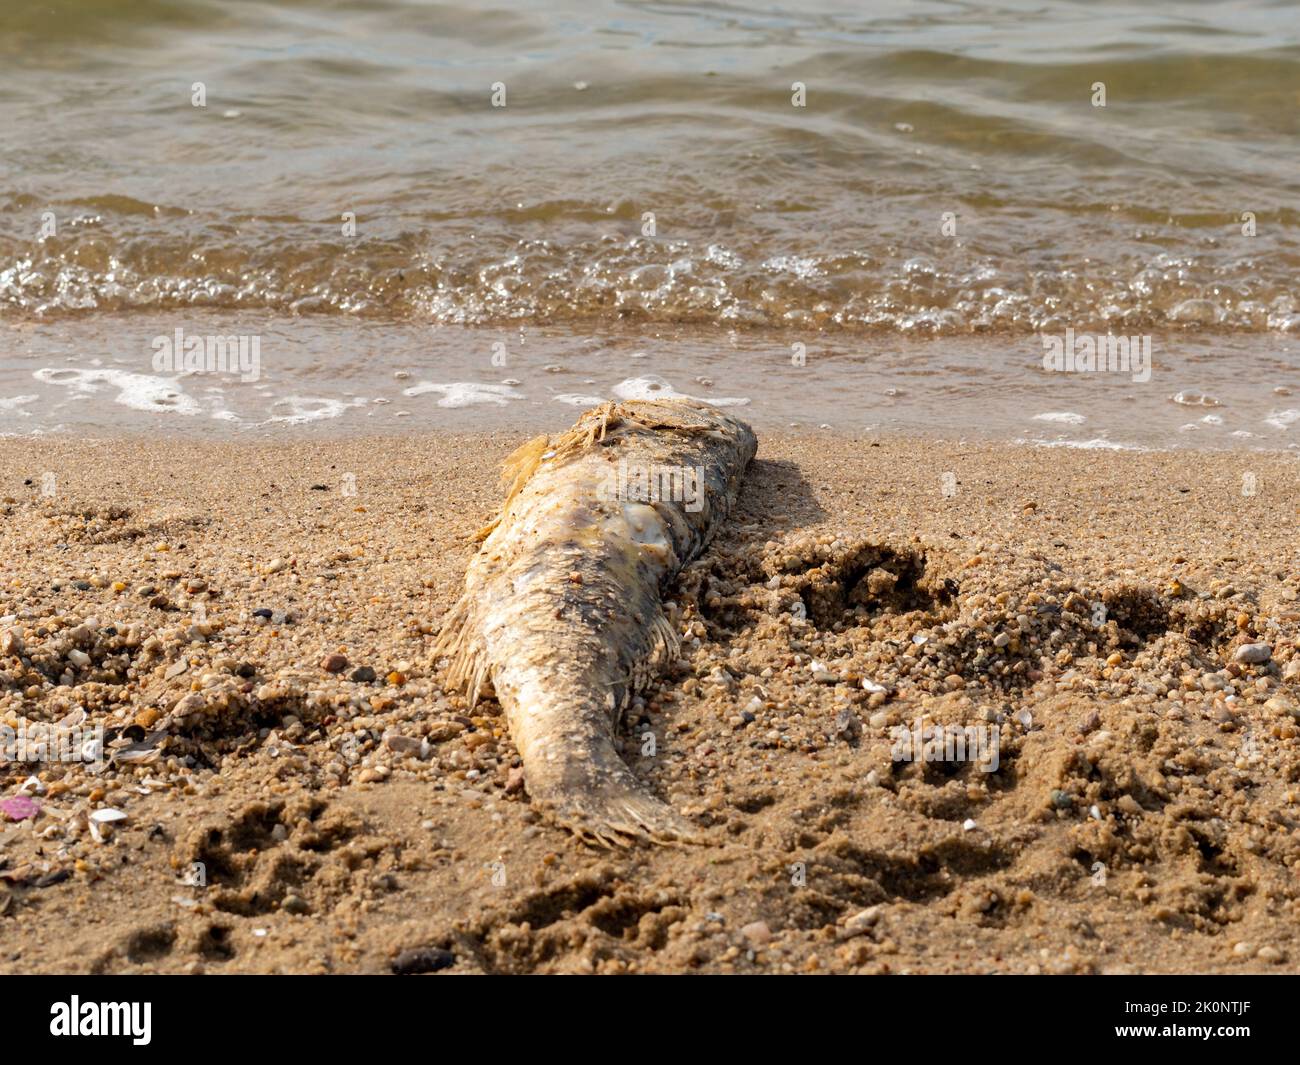 Un poisson mort allongé sur le sable à côté de l'eau. Rive d'un petit lac. Animal sauvage mort dans la nature. La cause de la mort n'est pas connue. Banque D'Images